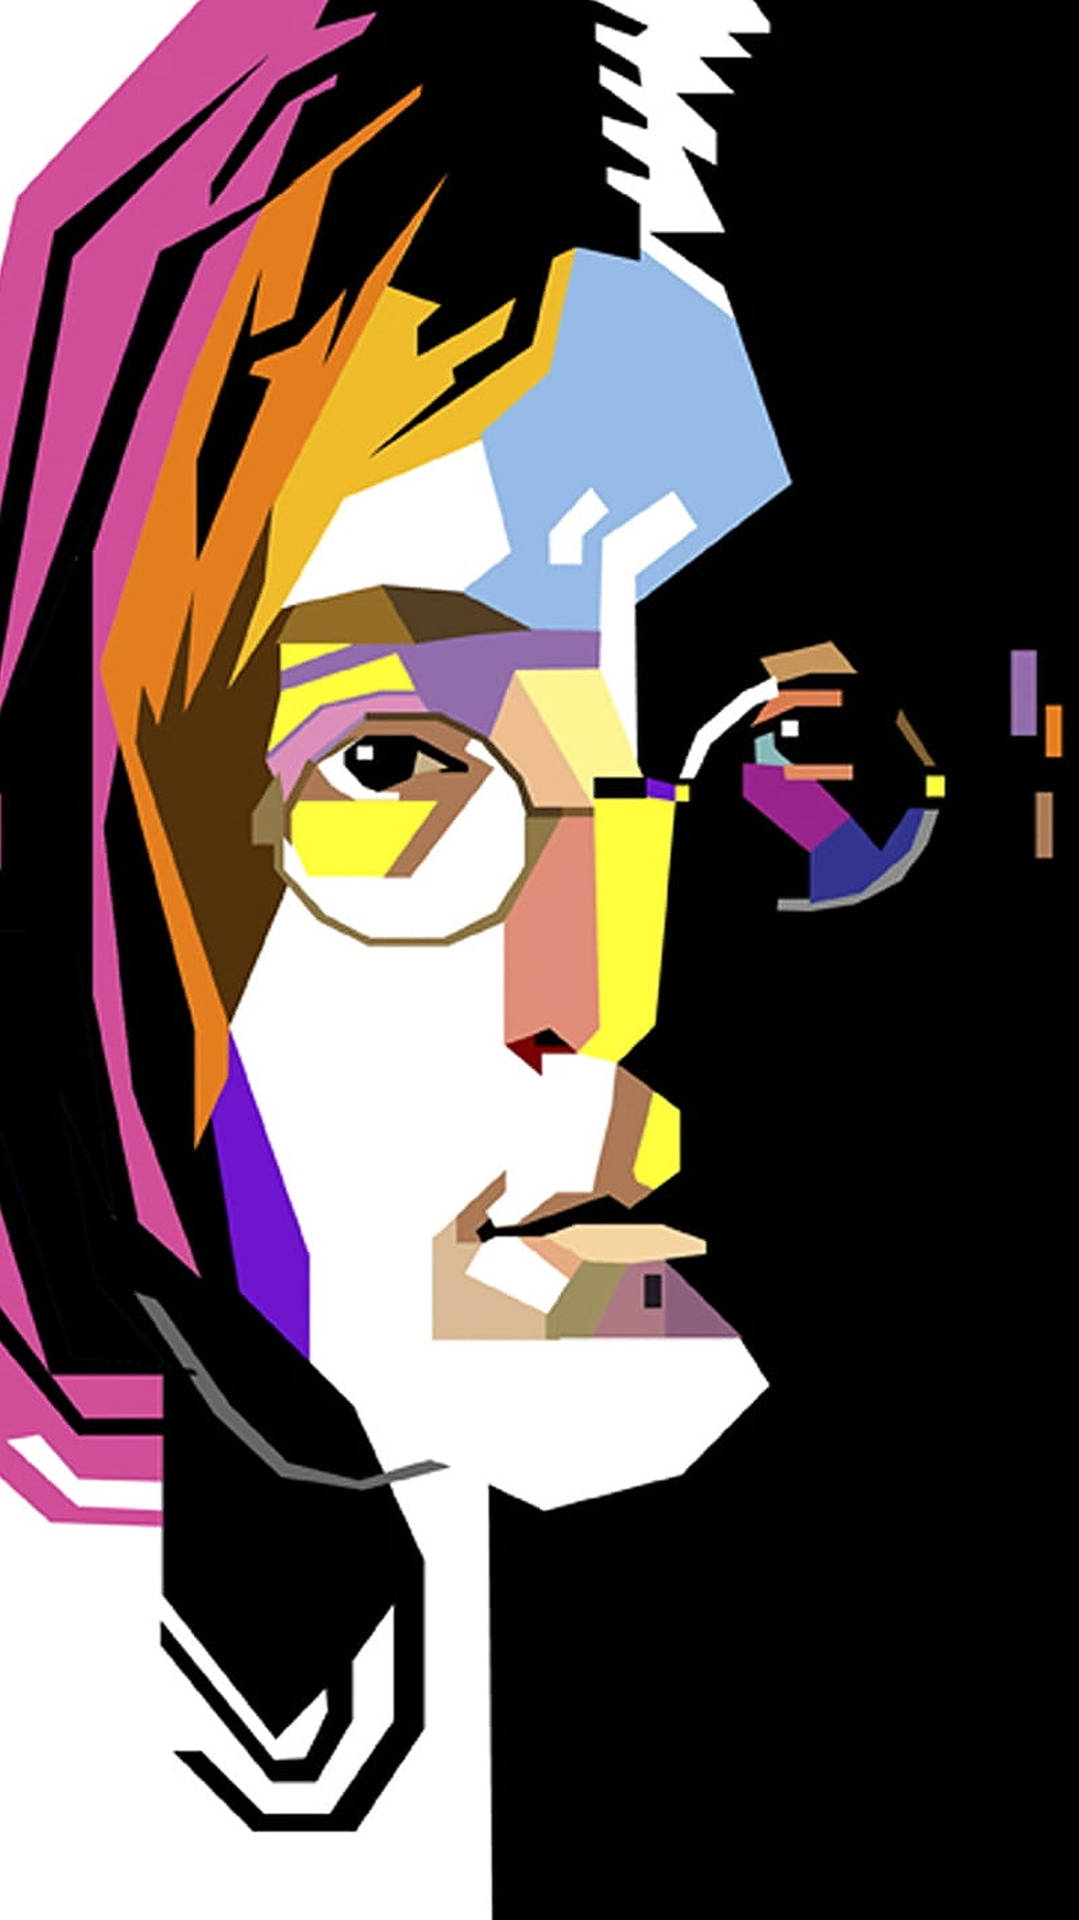 John Lennon Pop Artwork Wallpaper